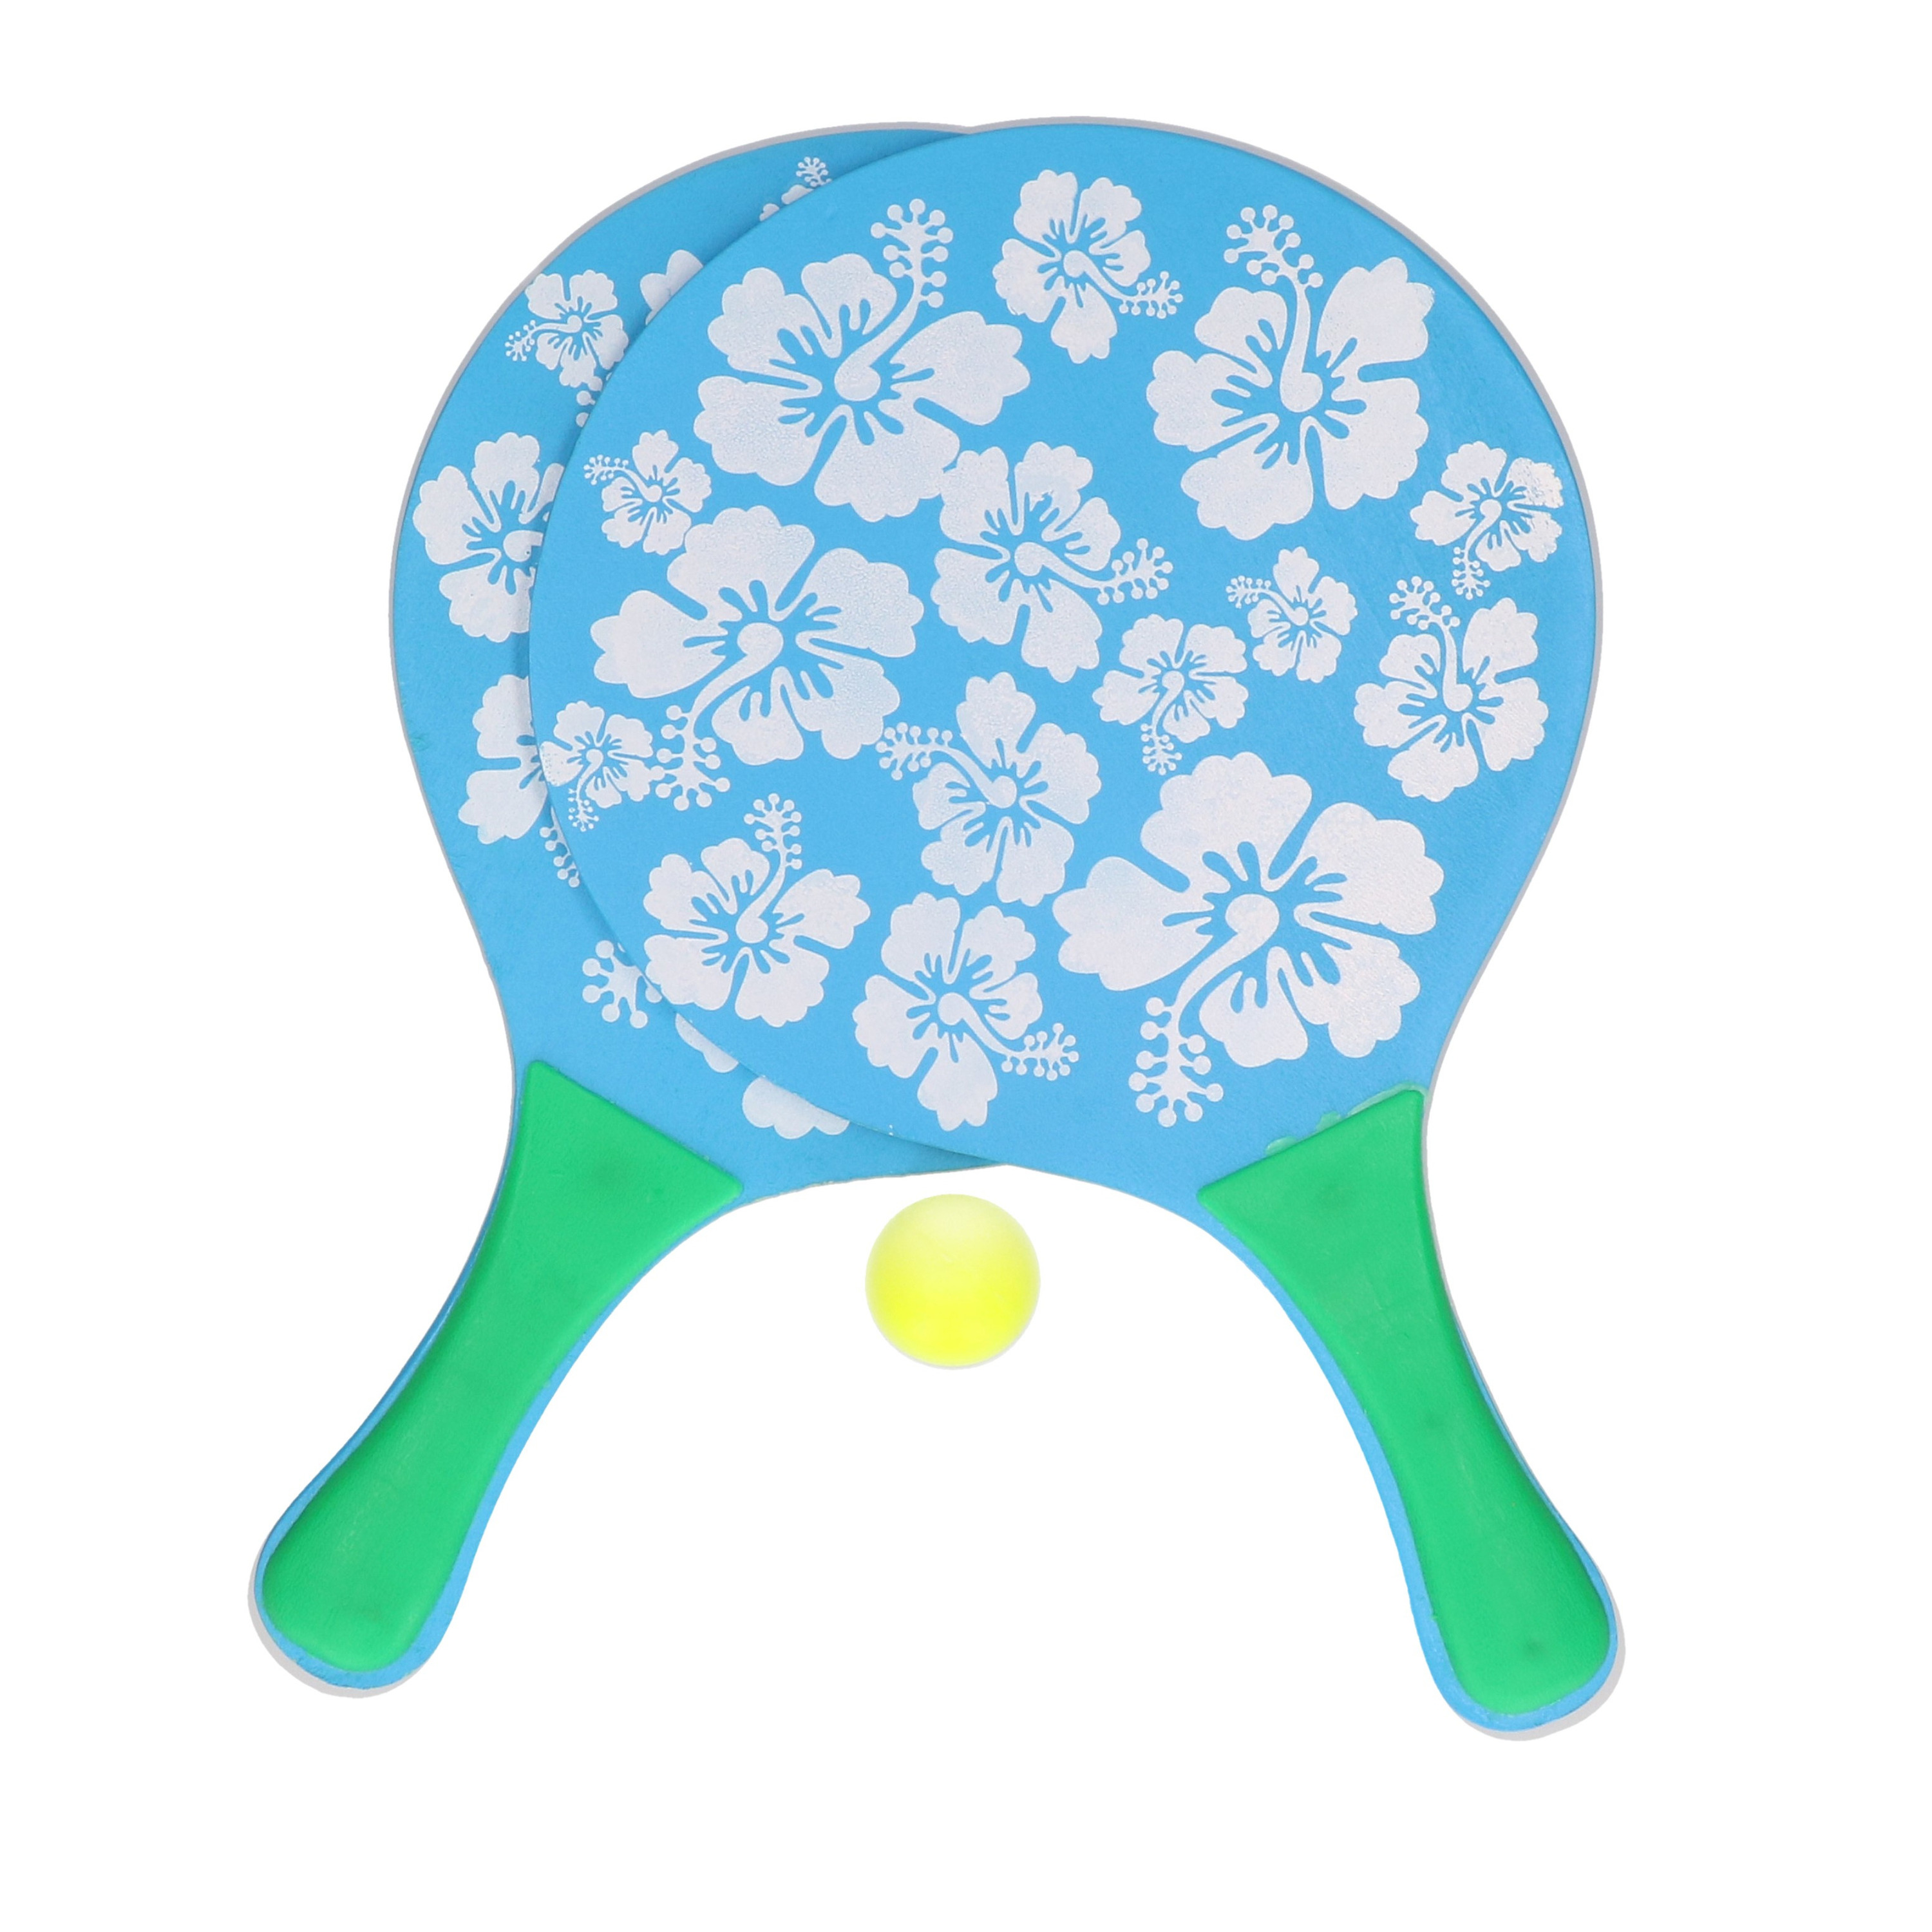 Actief speelgoed tennis-beachball setje blauw met bloemenmotief